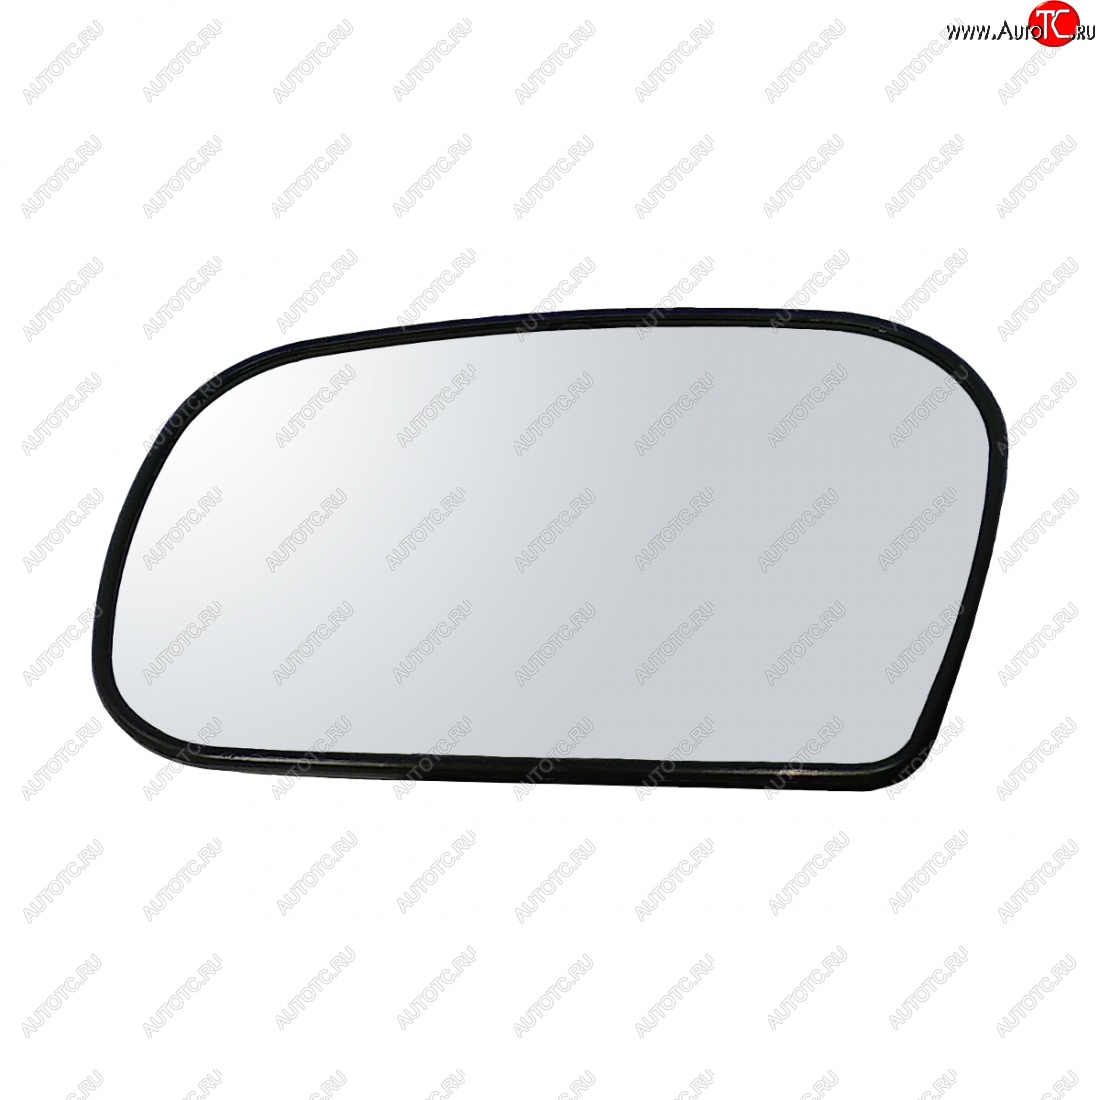 299 р. Левый зеркальный элемент (обогрев/под круг. моторедуктор в корпус ДААЗ) Автоблик2 Chevrolet Niva 2123 рестайлинг (2009-2020) (без антибликового покрытия)  с доставкой в г. Калуга